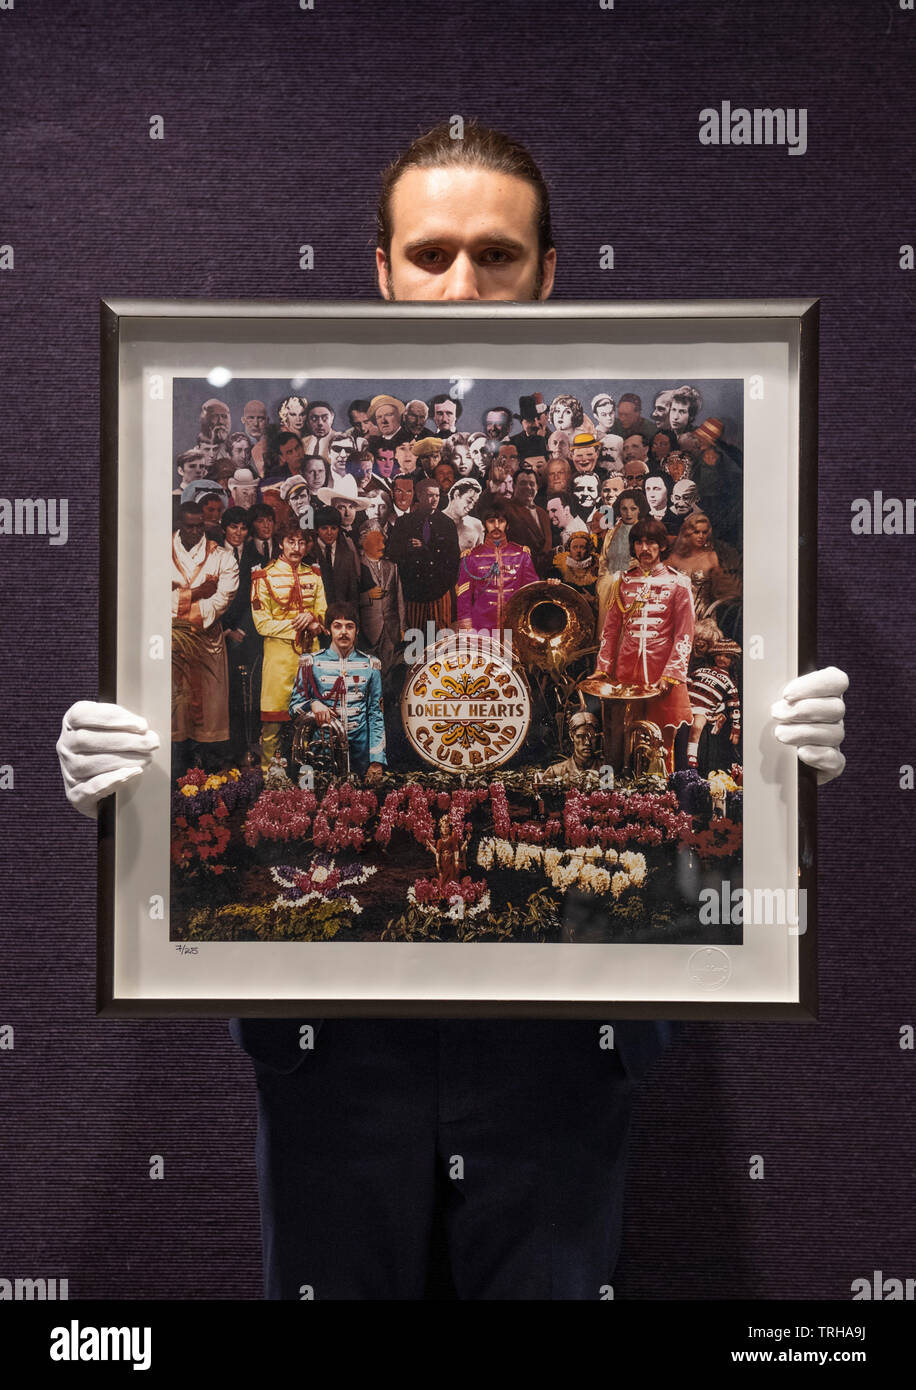 Bonhams, Londra, Regno Unito. Il 6 giugno 2019. Bonhams memorabilia di intrattenimento vendita anteprima. Michael Cooper Sgt Pepper out-prendere stampa fotografica, 1967, stampato in seguito. Preventivo: £1,200-1,800. Credito: Malcolm Park/Alamy Live News. Foto Stock